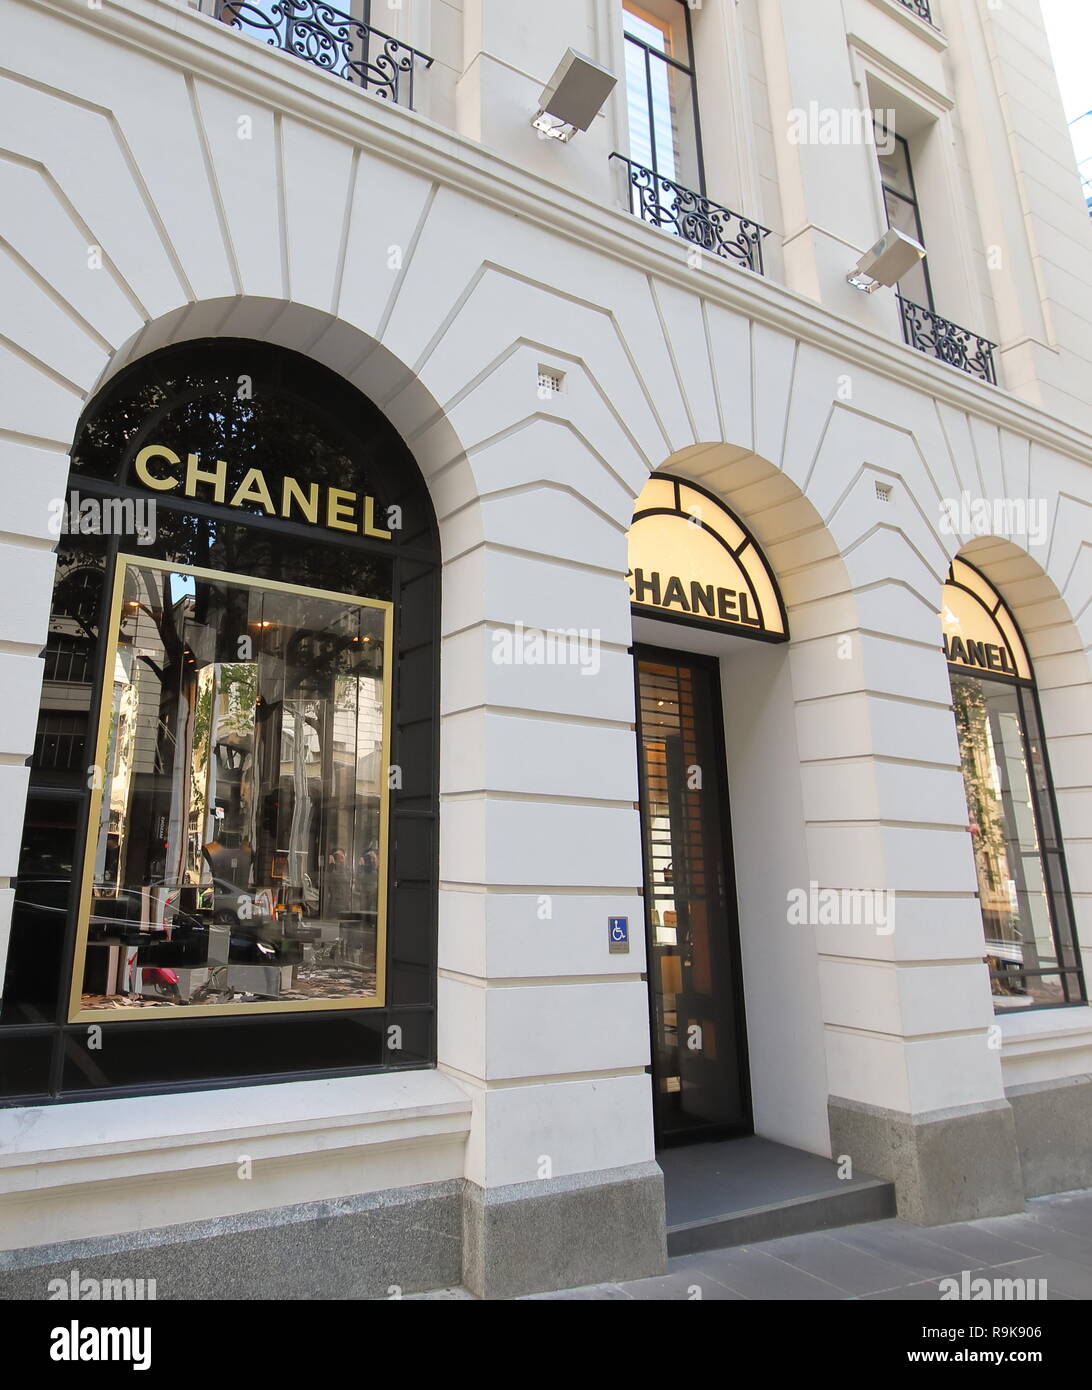 Tienda Chanel en Melbourne Australia Fotografía de stock - Alamy